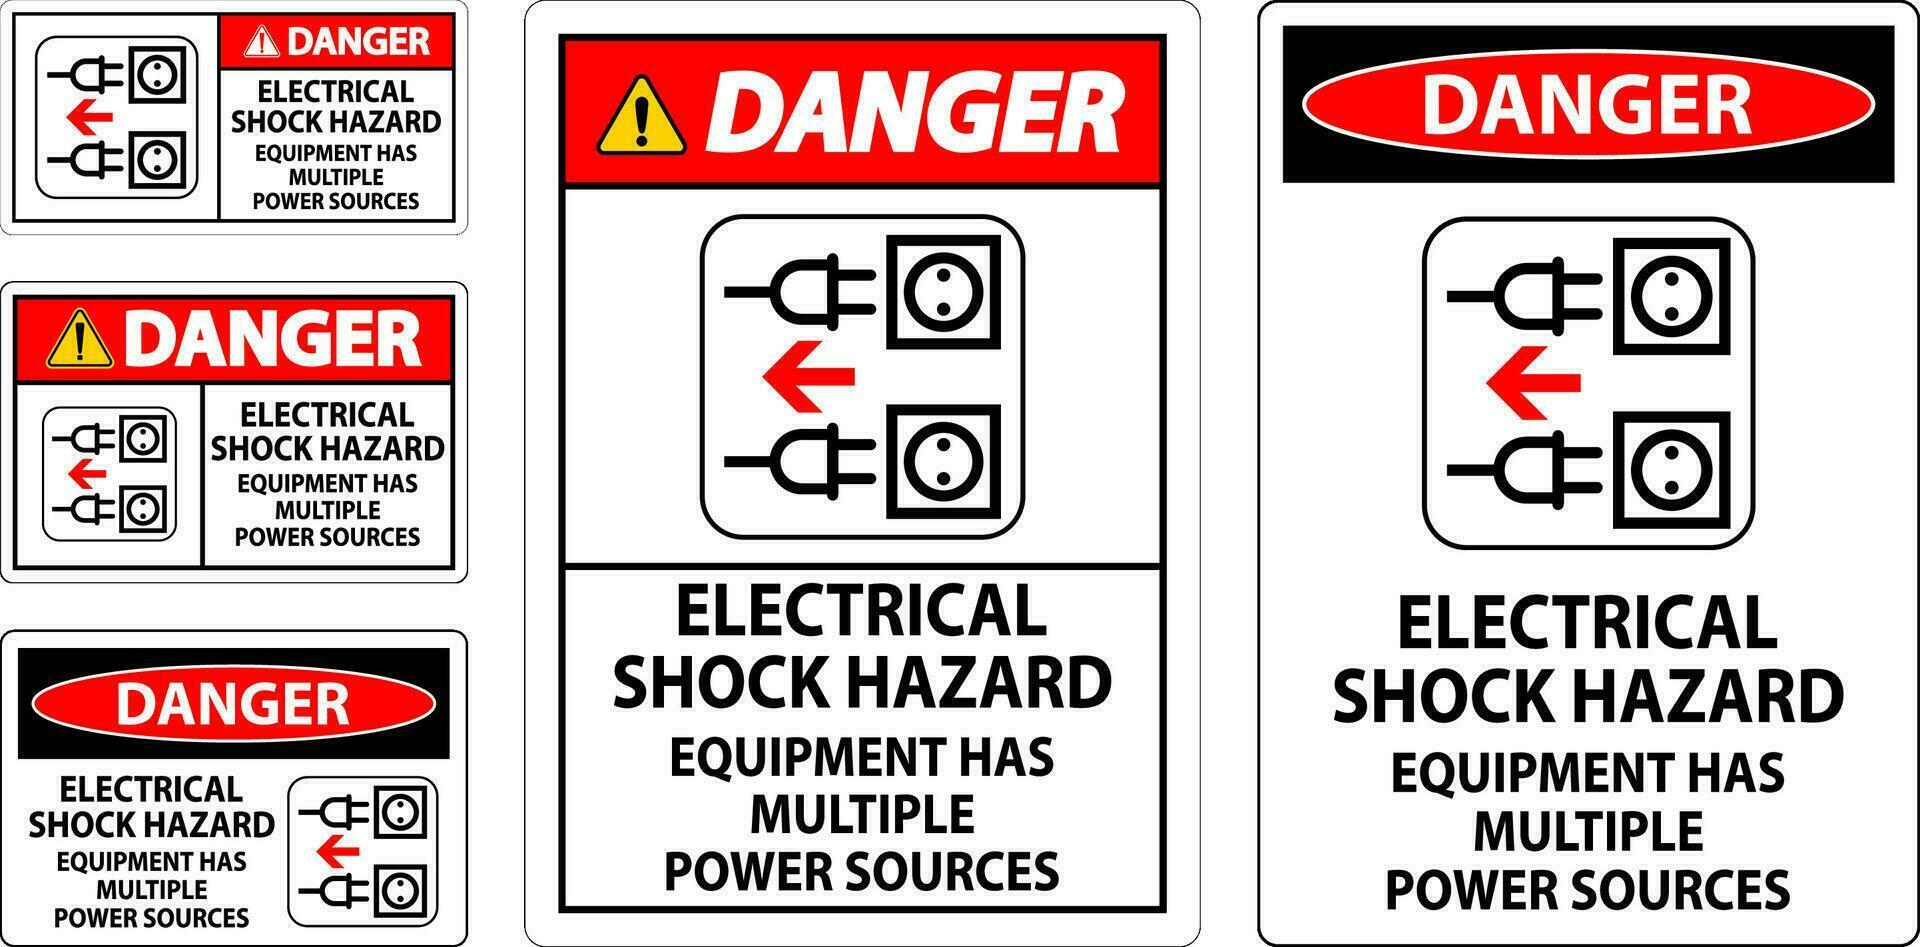 danger signe électrique choc danger, équipement a plusieurs Puissance sources vecteur